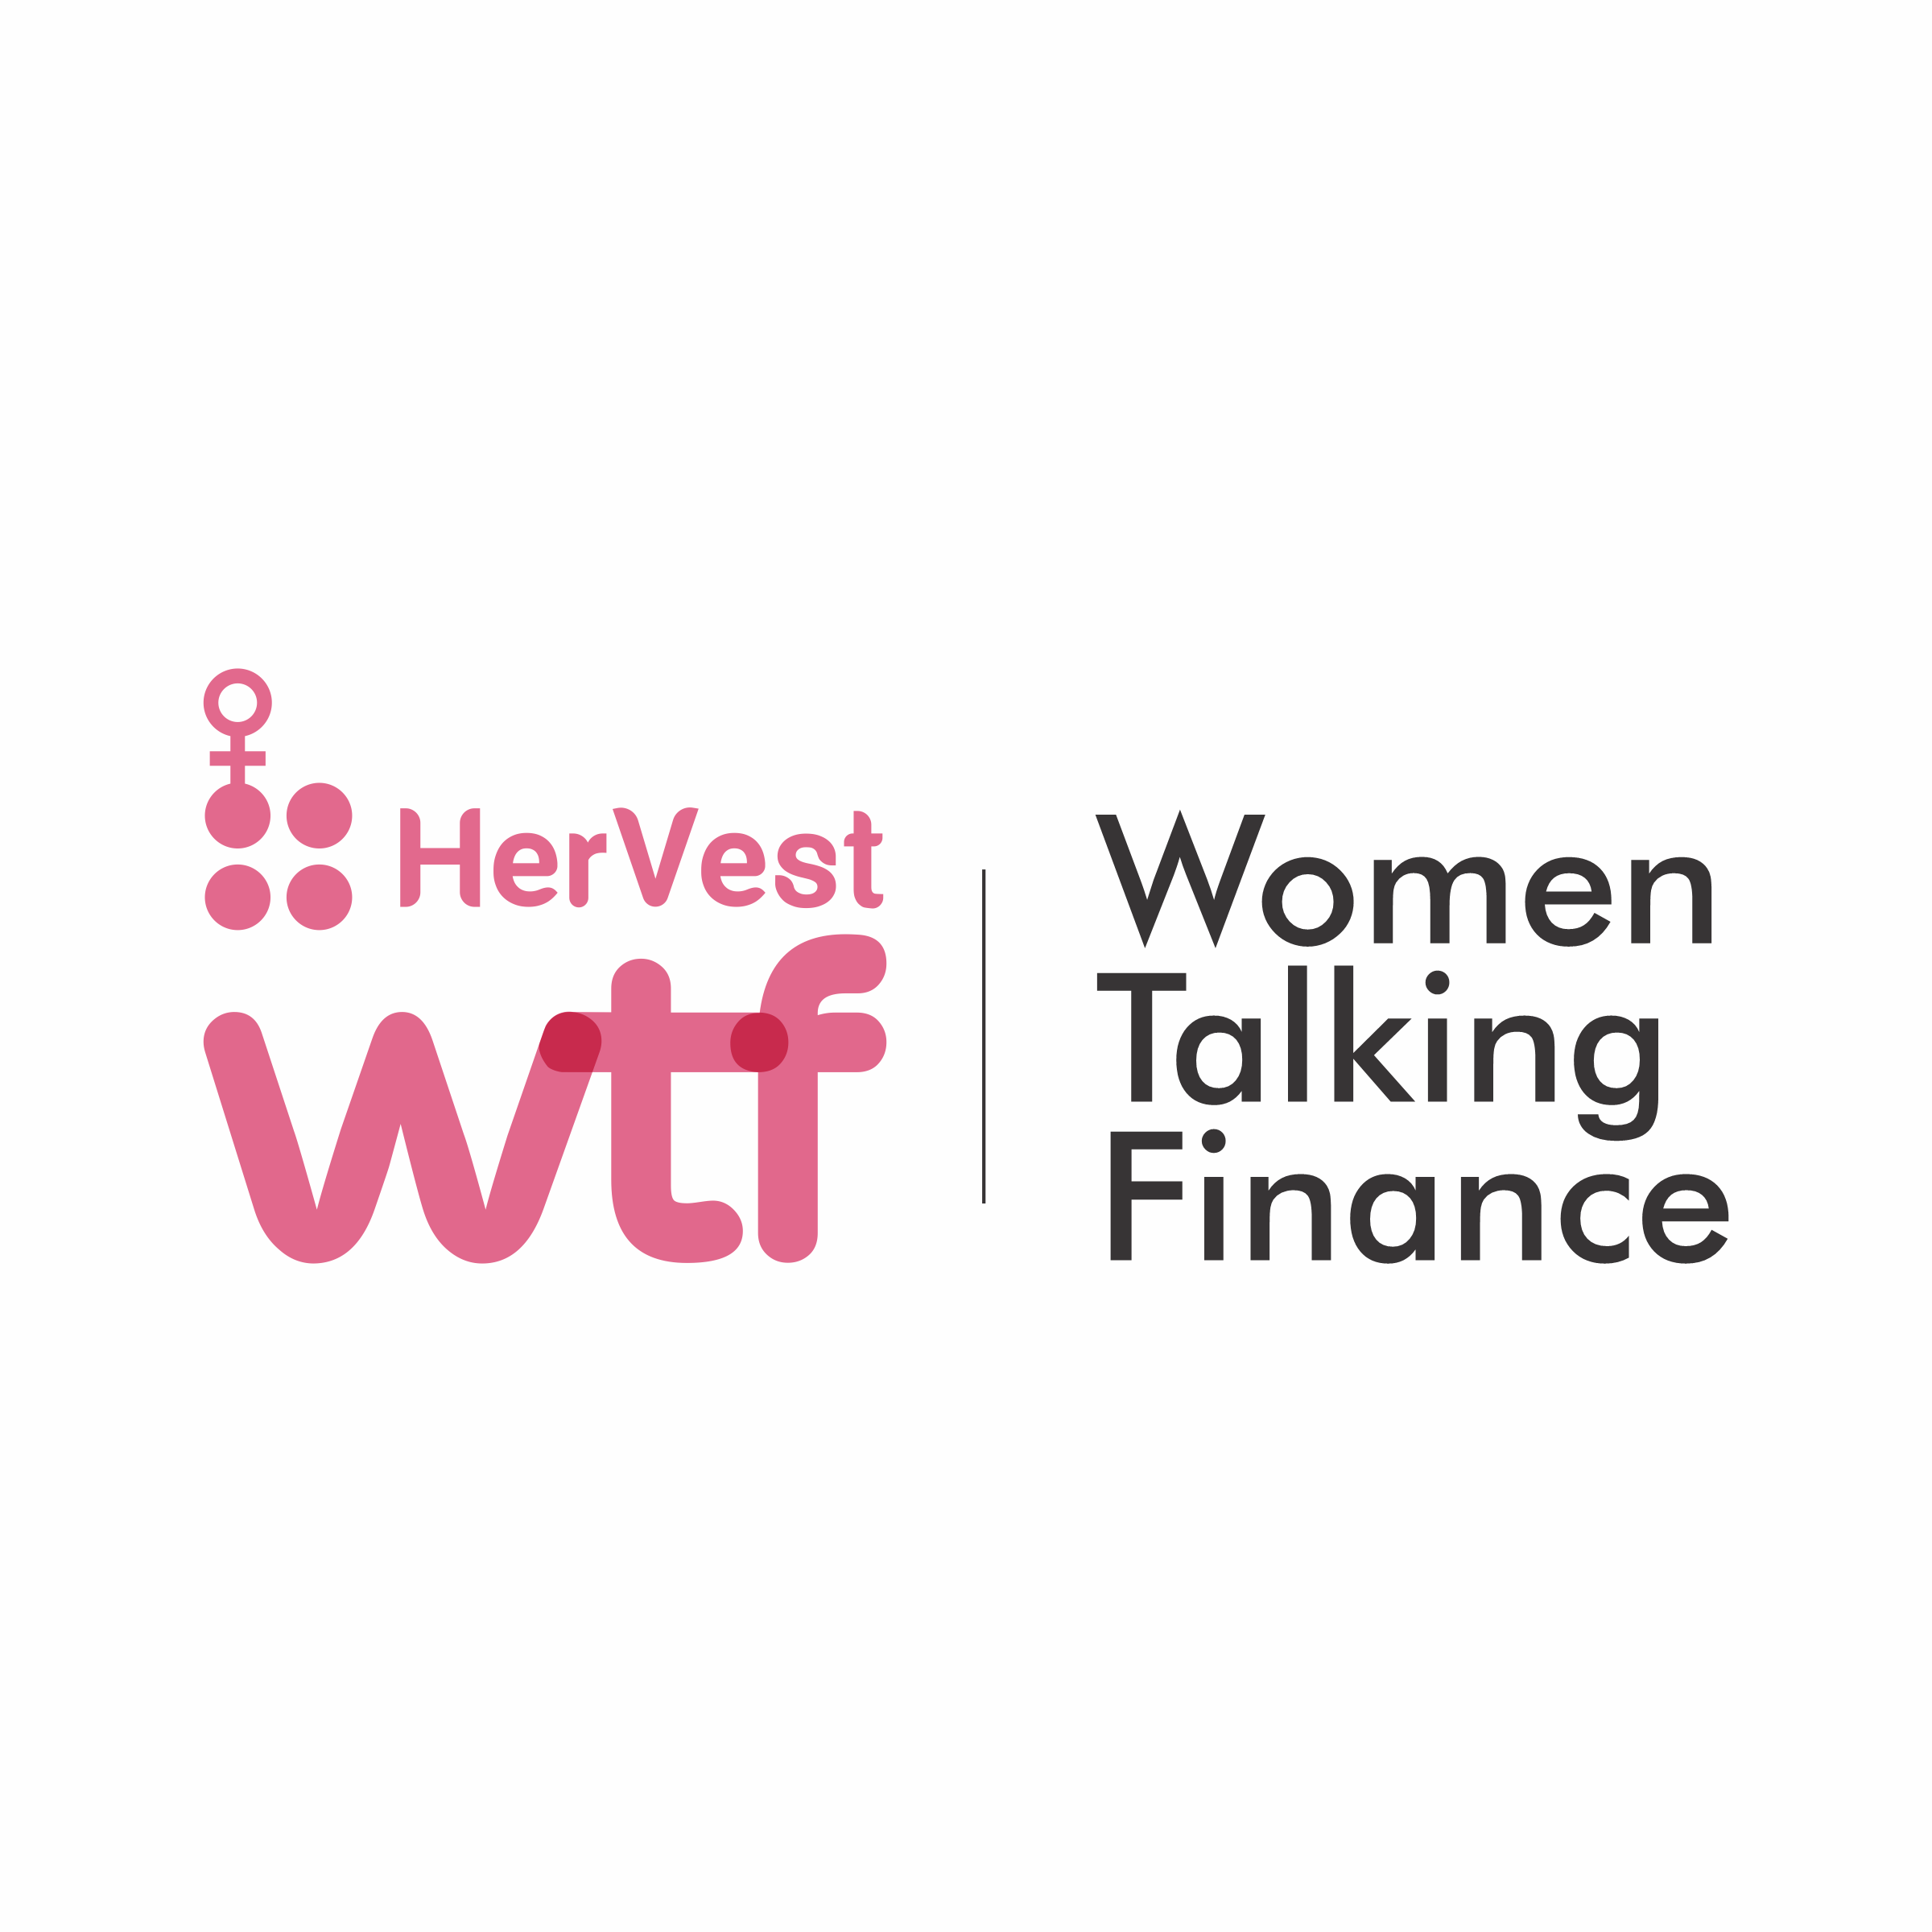 HerVest - Opportunities for Women